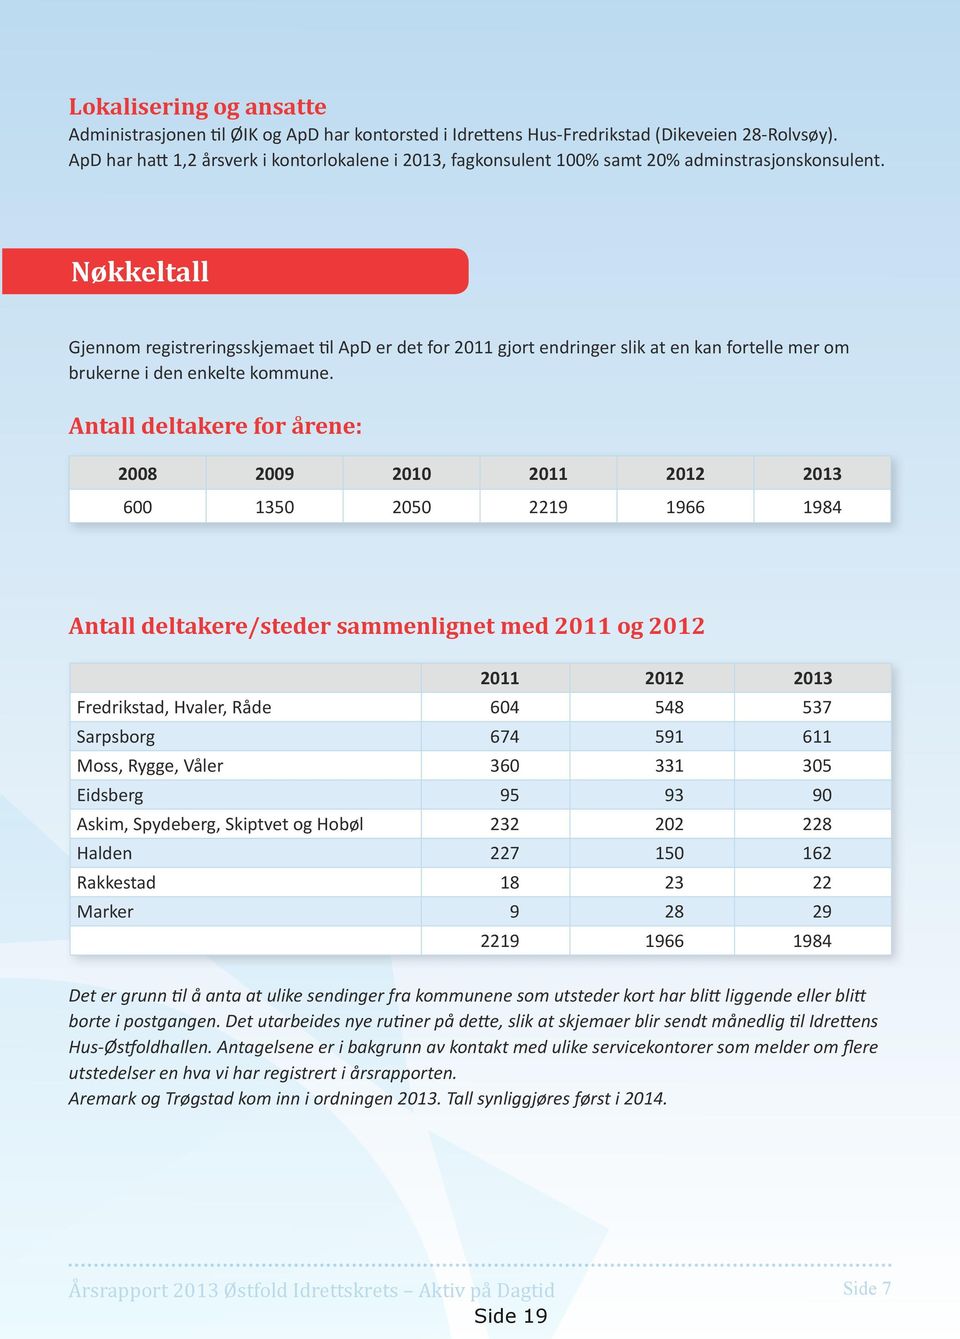 Nøkkeltall Gjennom registreringsskjemaet til ApD er det for 2011 gjort endringer slik at en kan fortelle mer om brukerne i den enkelte kommune.